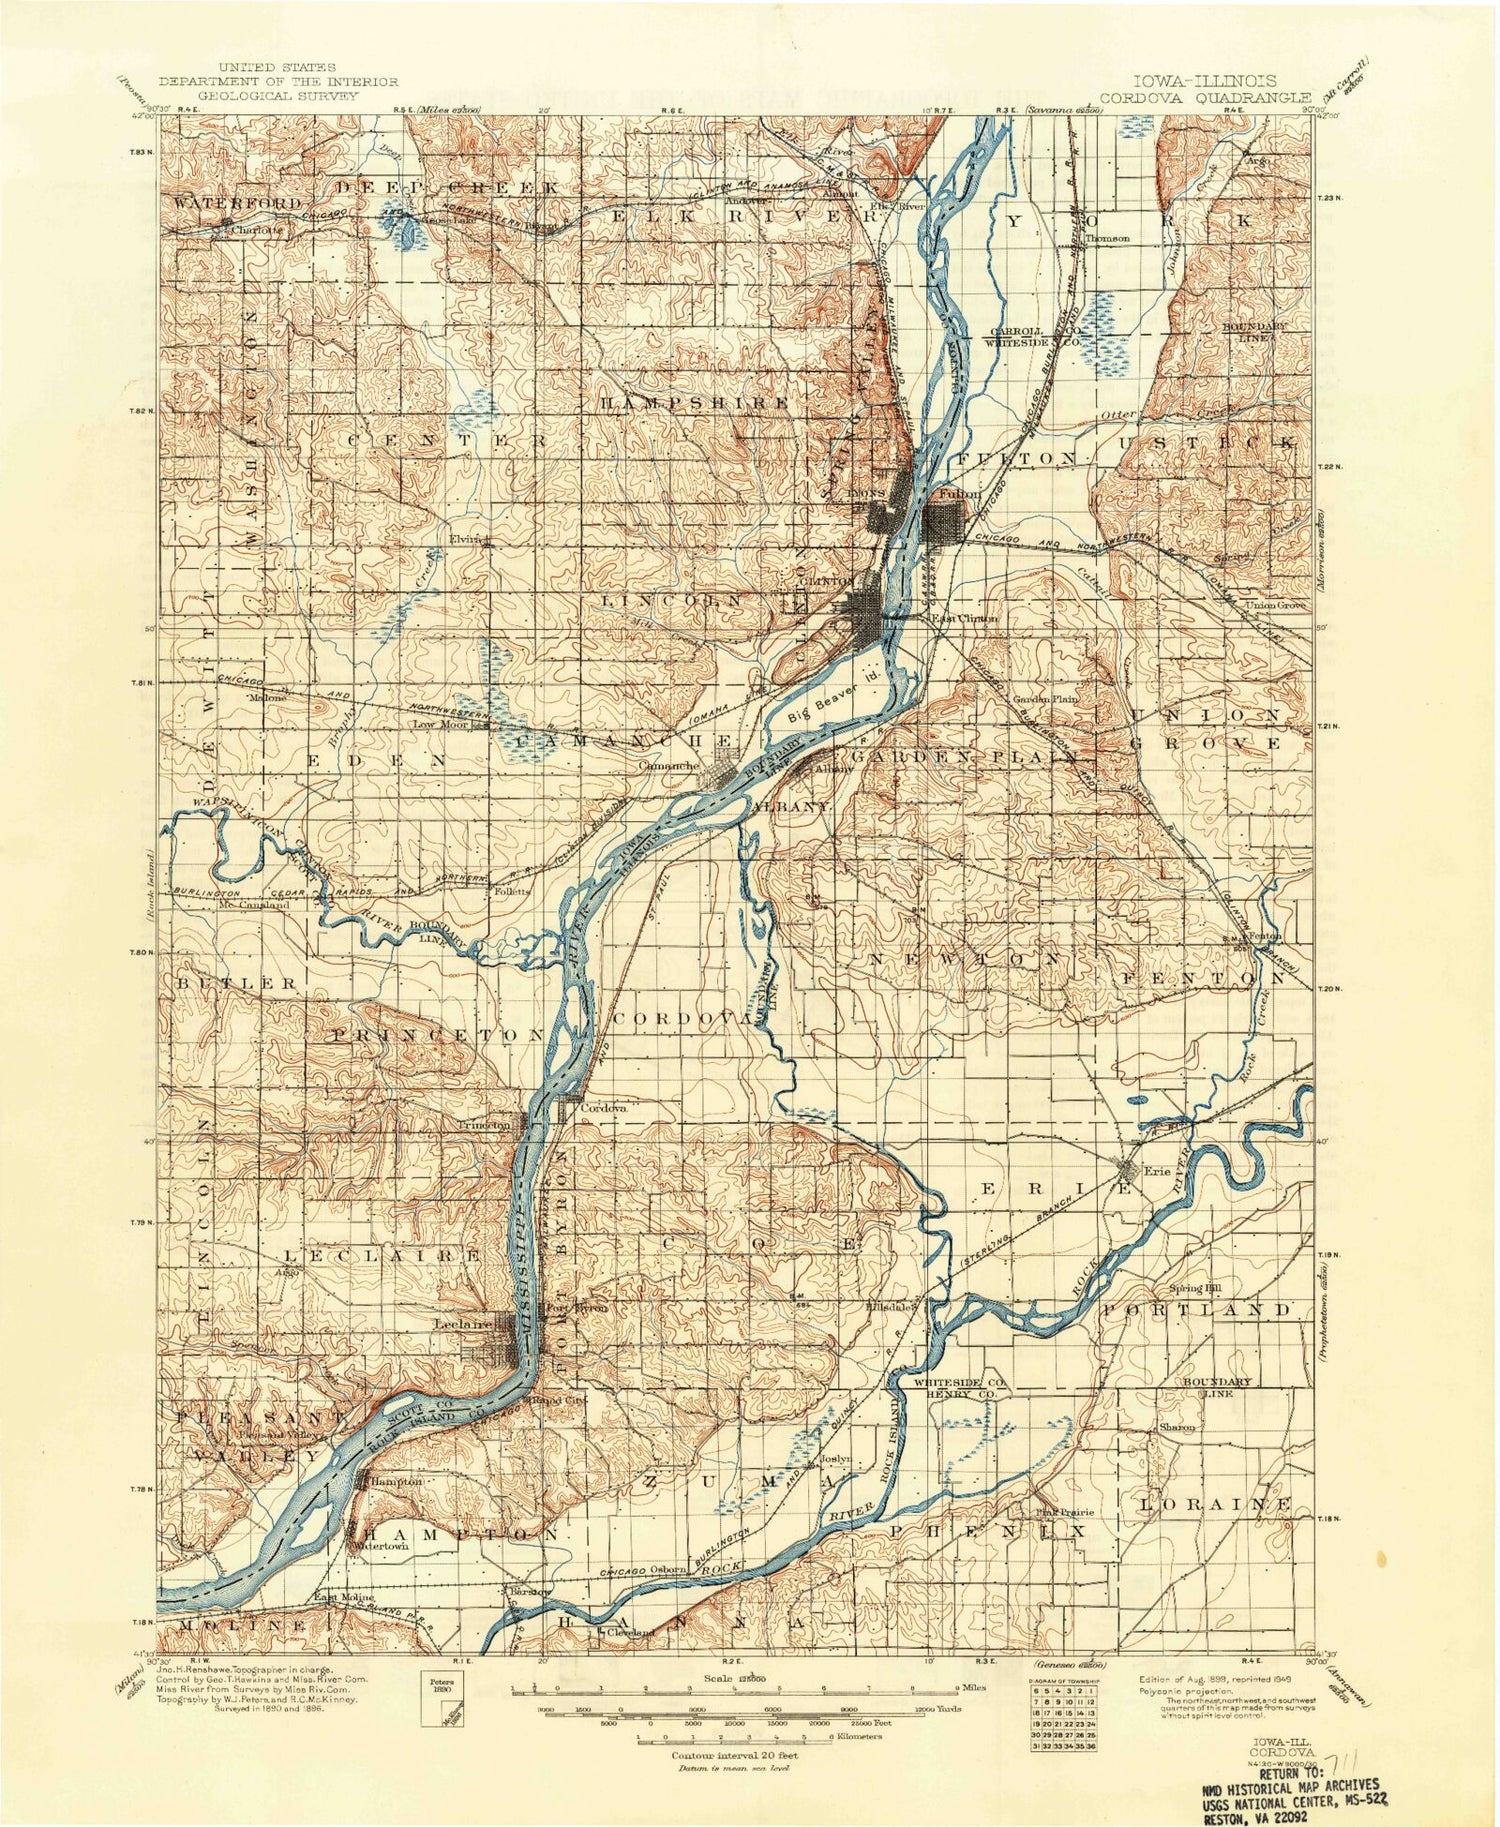 Historic 1899 Cordova Illinois 30'x30' Topo Map Image